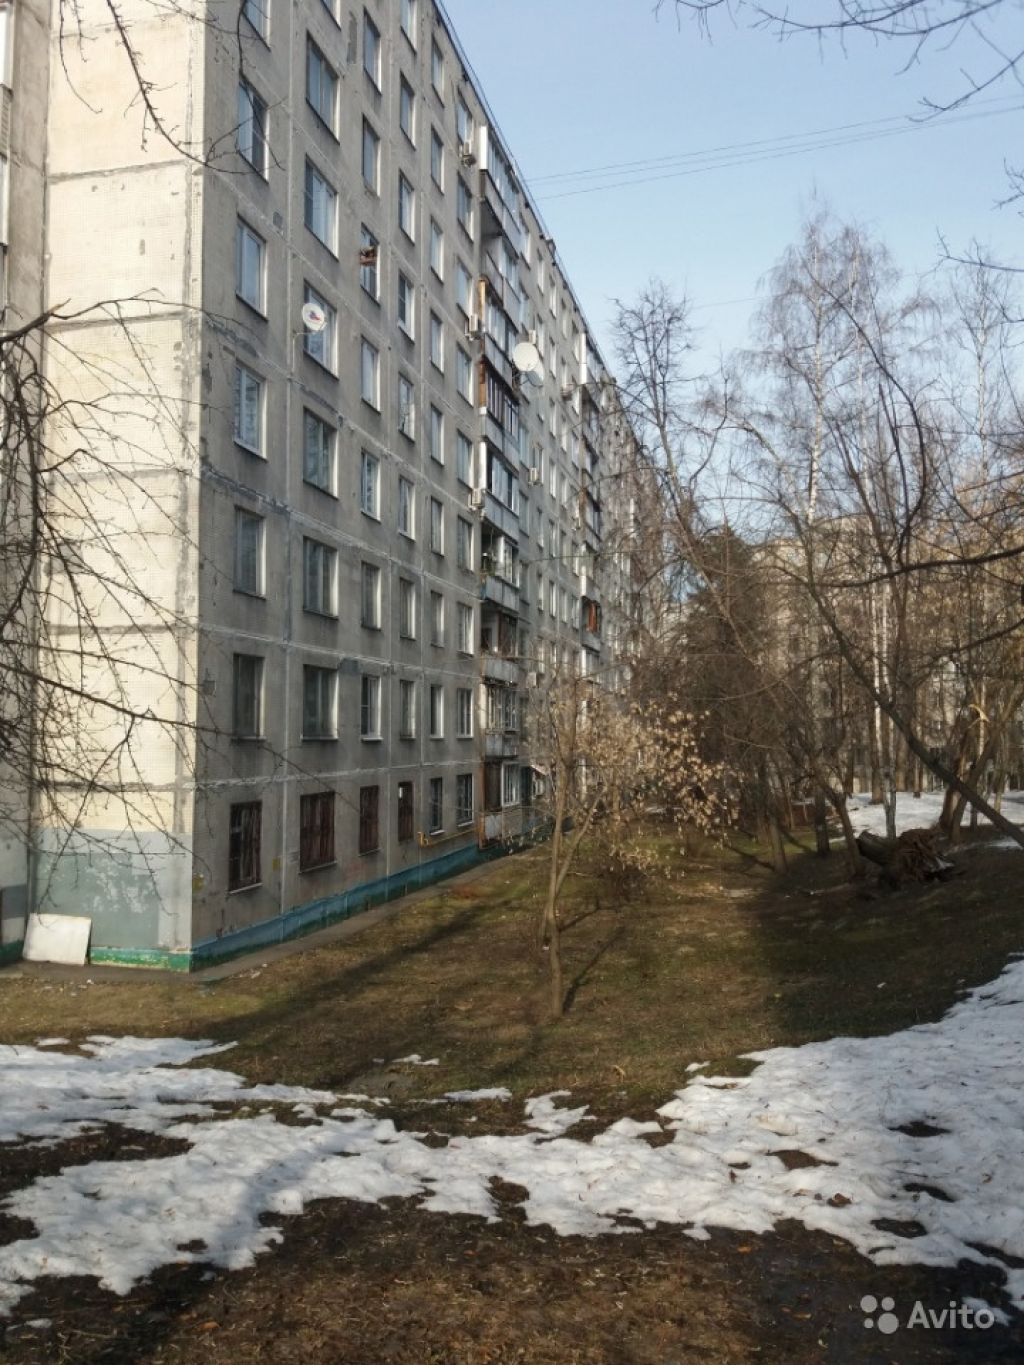 Продам квартиру 1-к квартира 33 м² на 2 этаже 9-этажного панельного дома в Москве. Фото 1